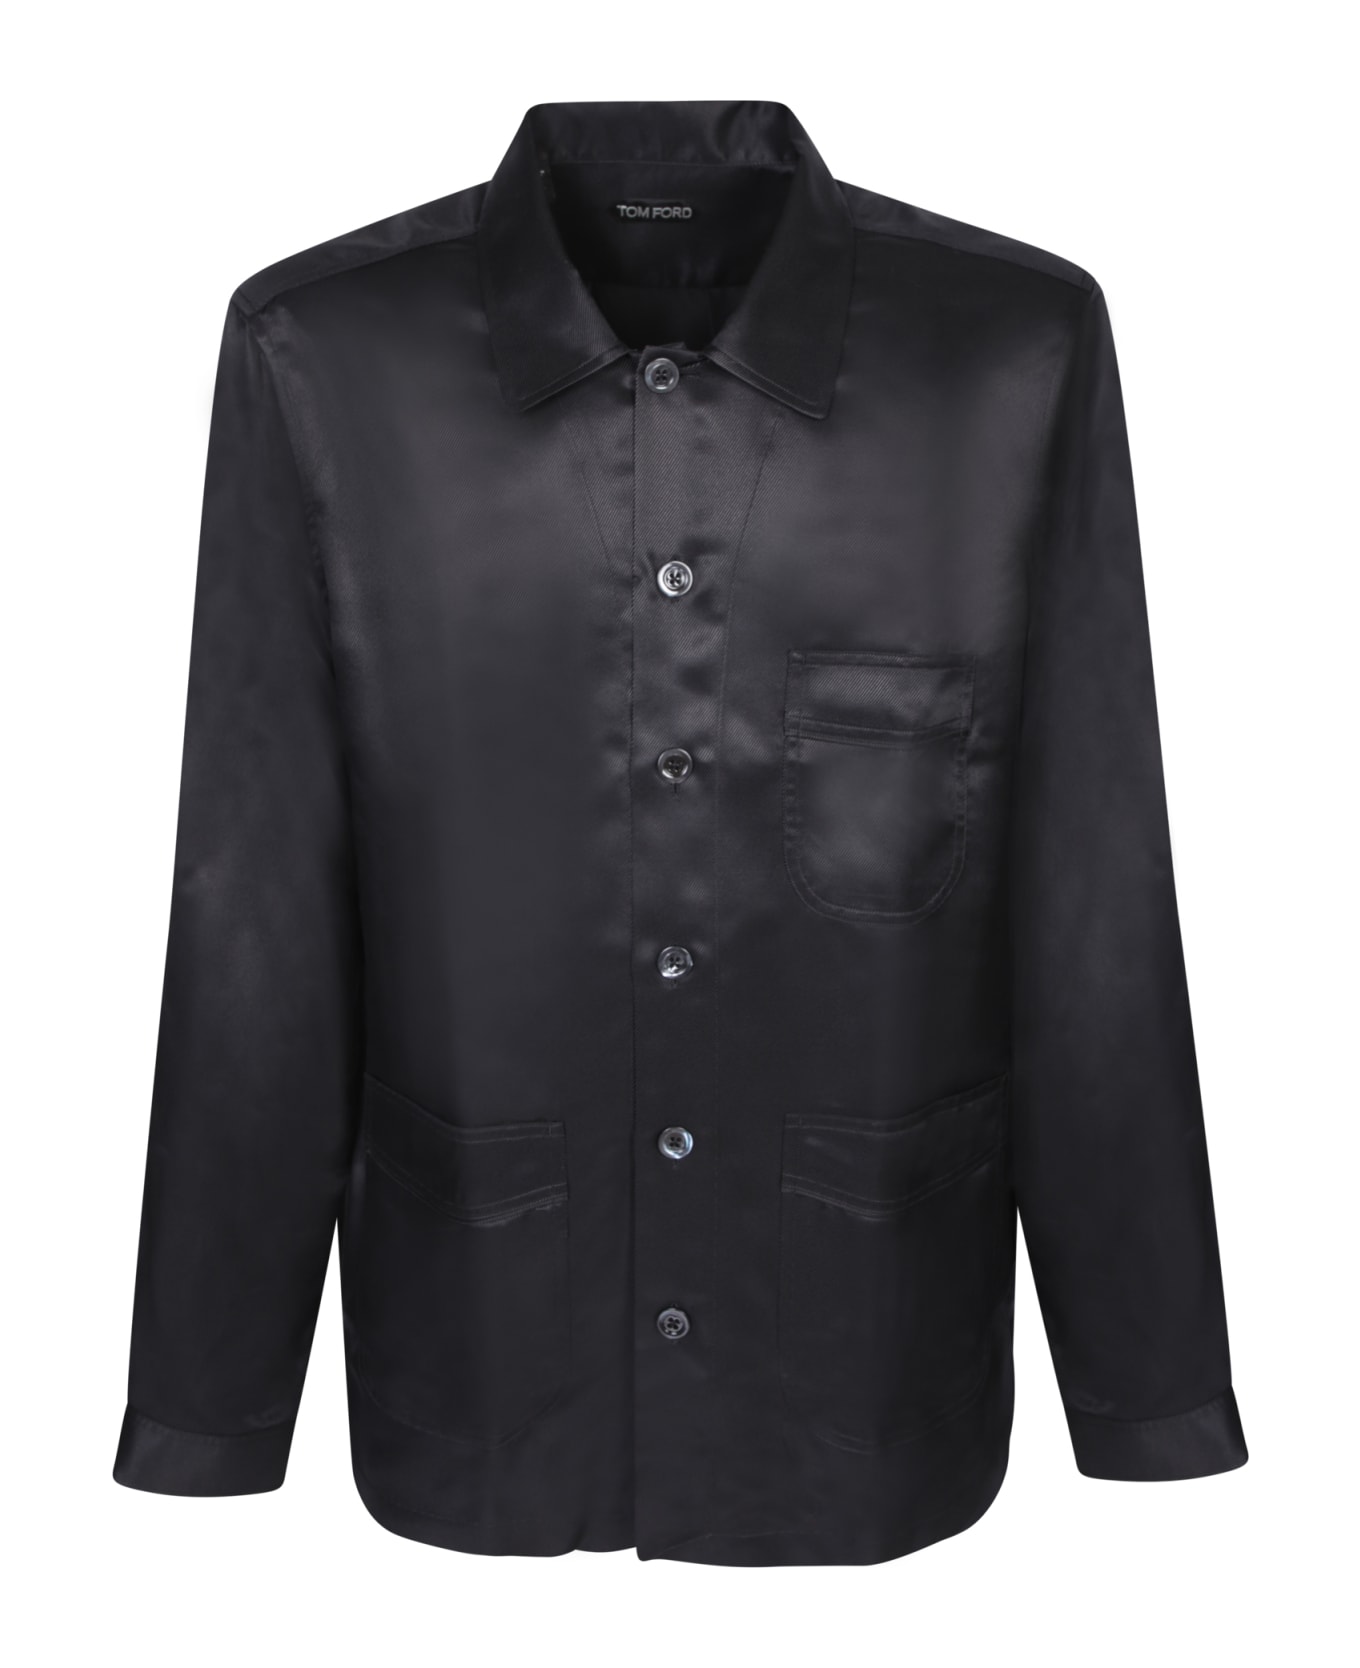 Tom Ford Pockets Black Shirt - Black シャツ